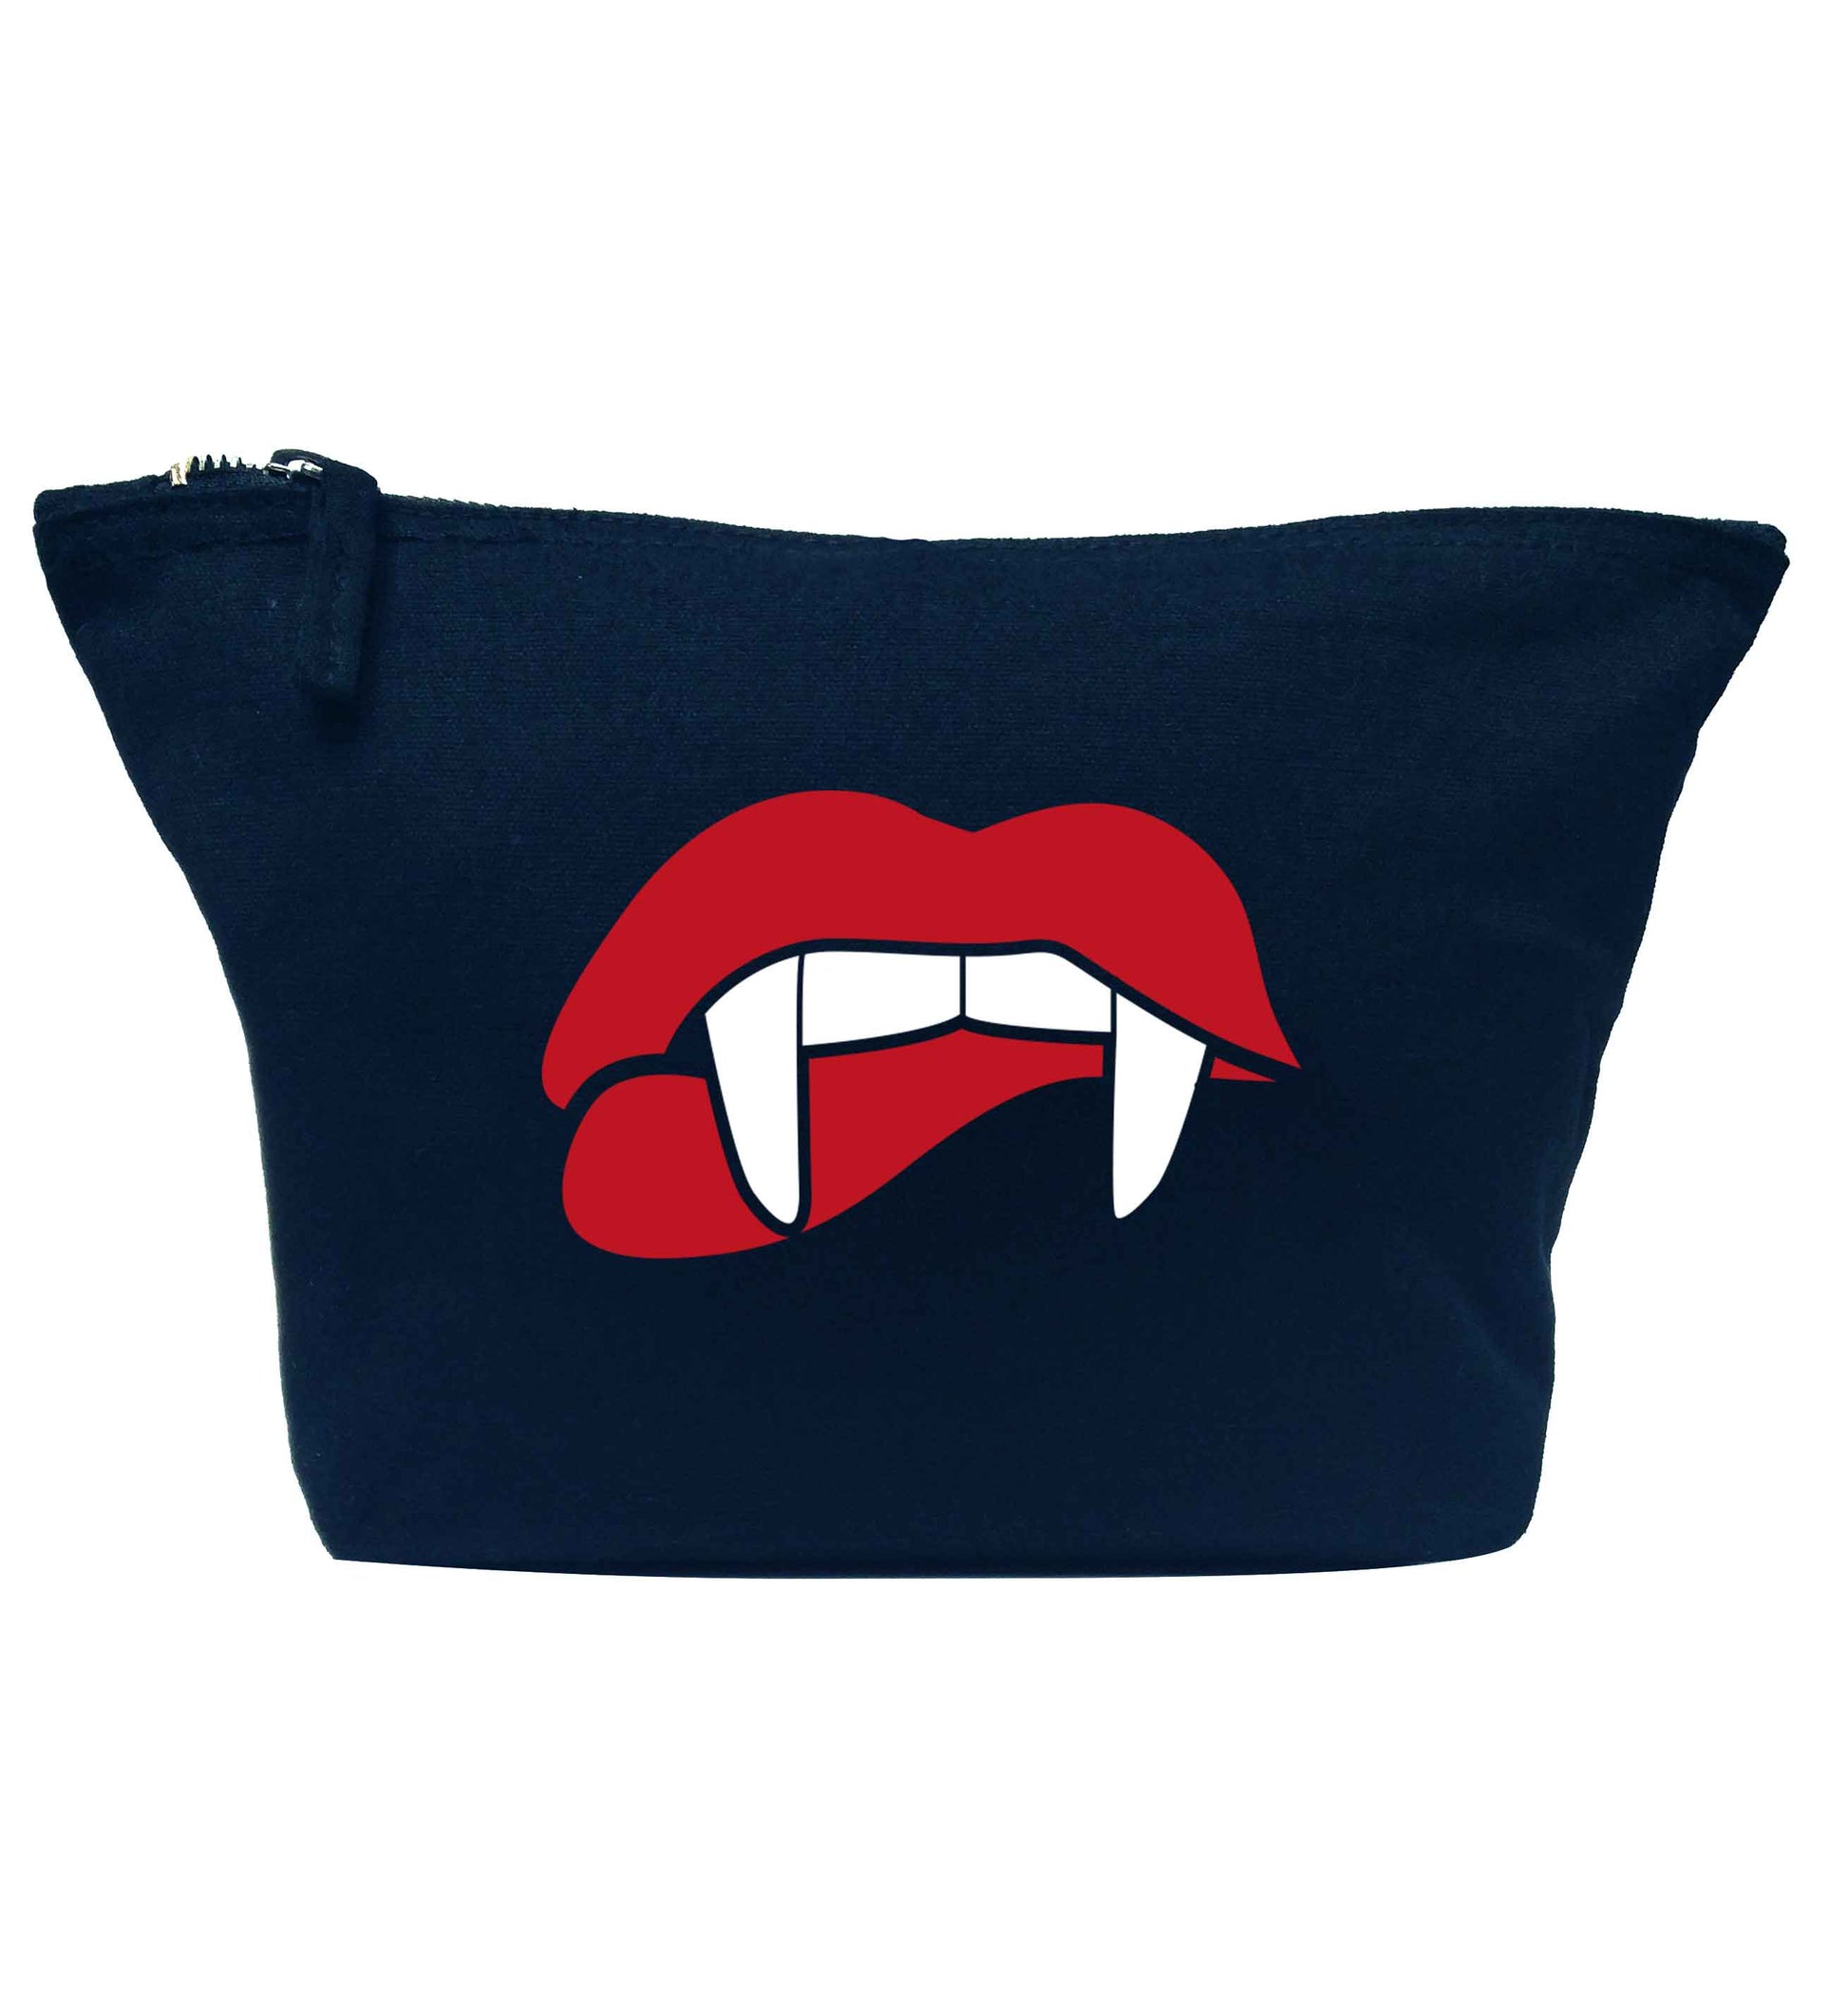 Vampire fangs navy makeup bag